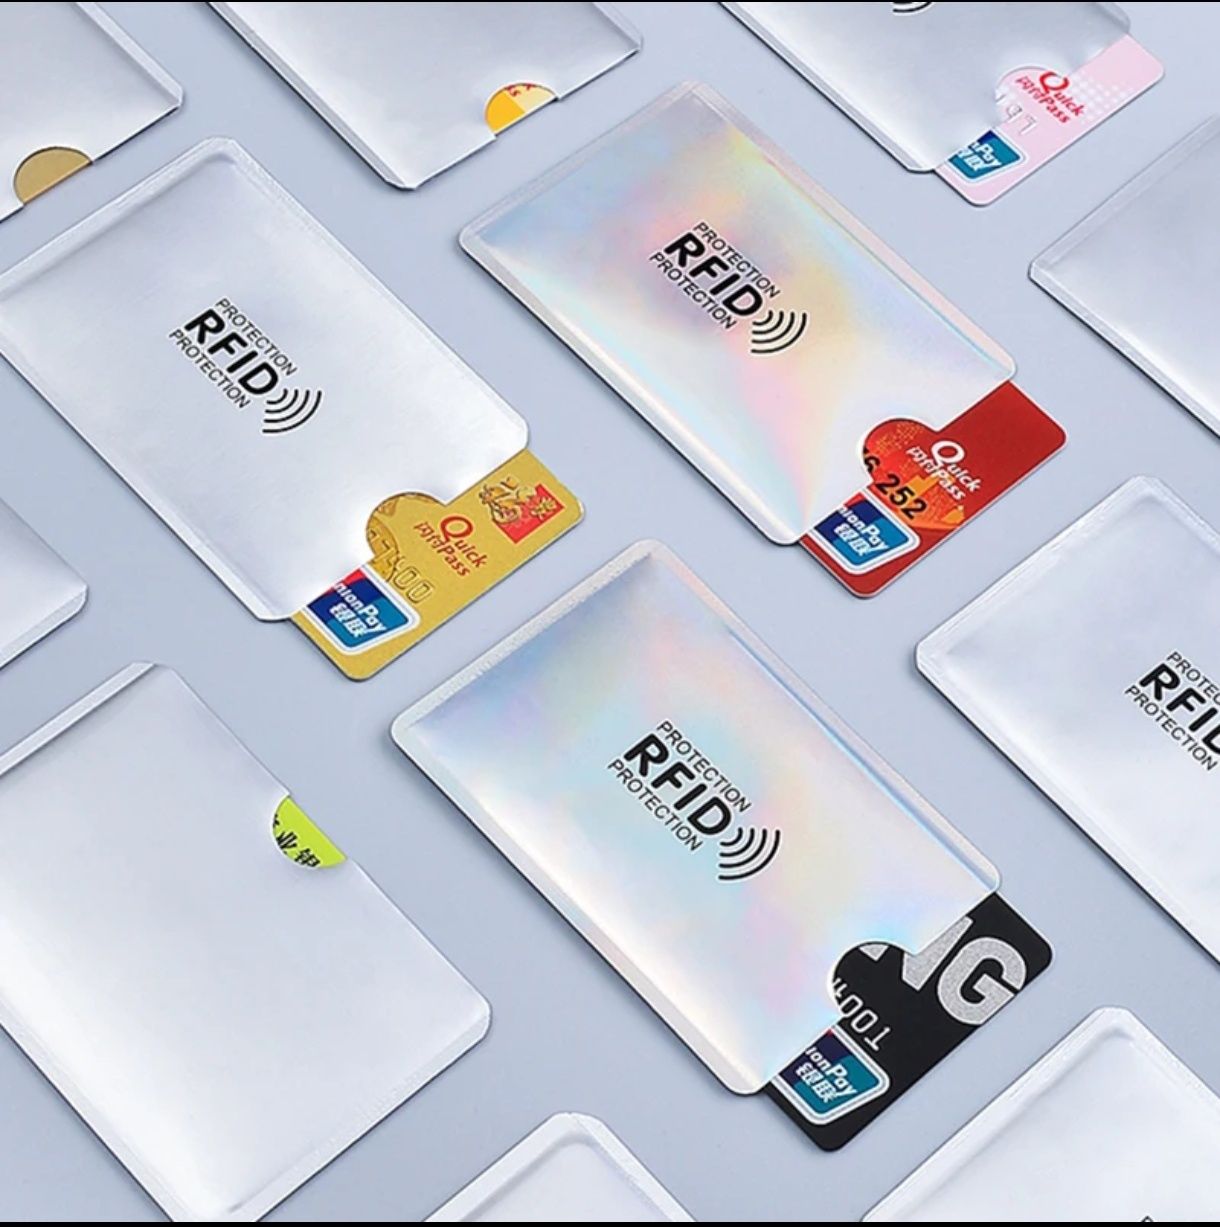 Чехол для банковских карт с защитой от сканирования Anti RFID (NFC OFF